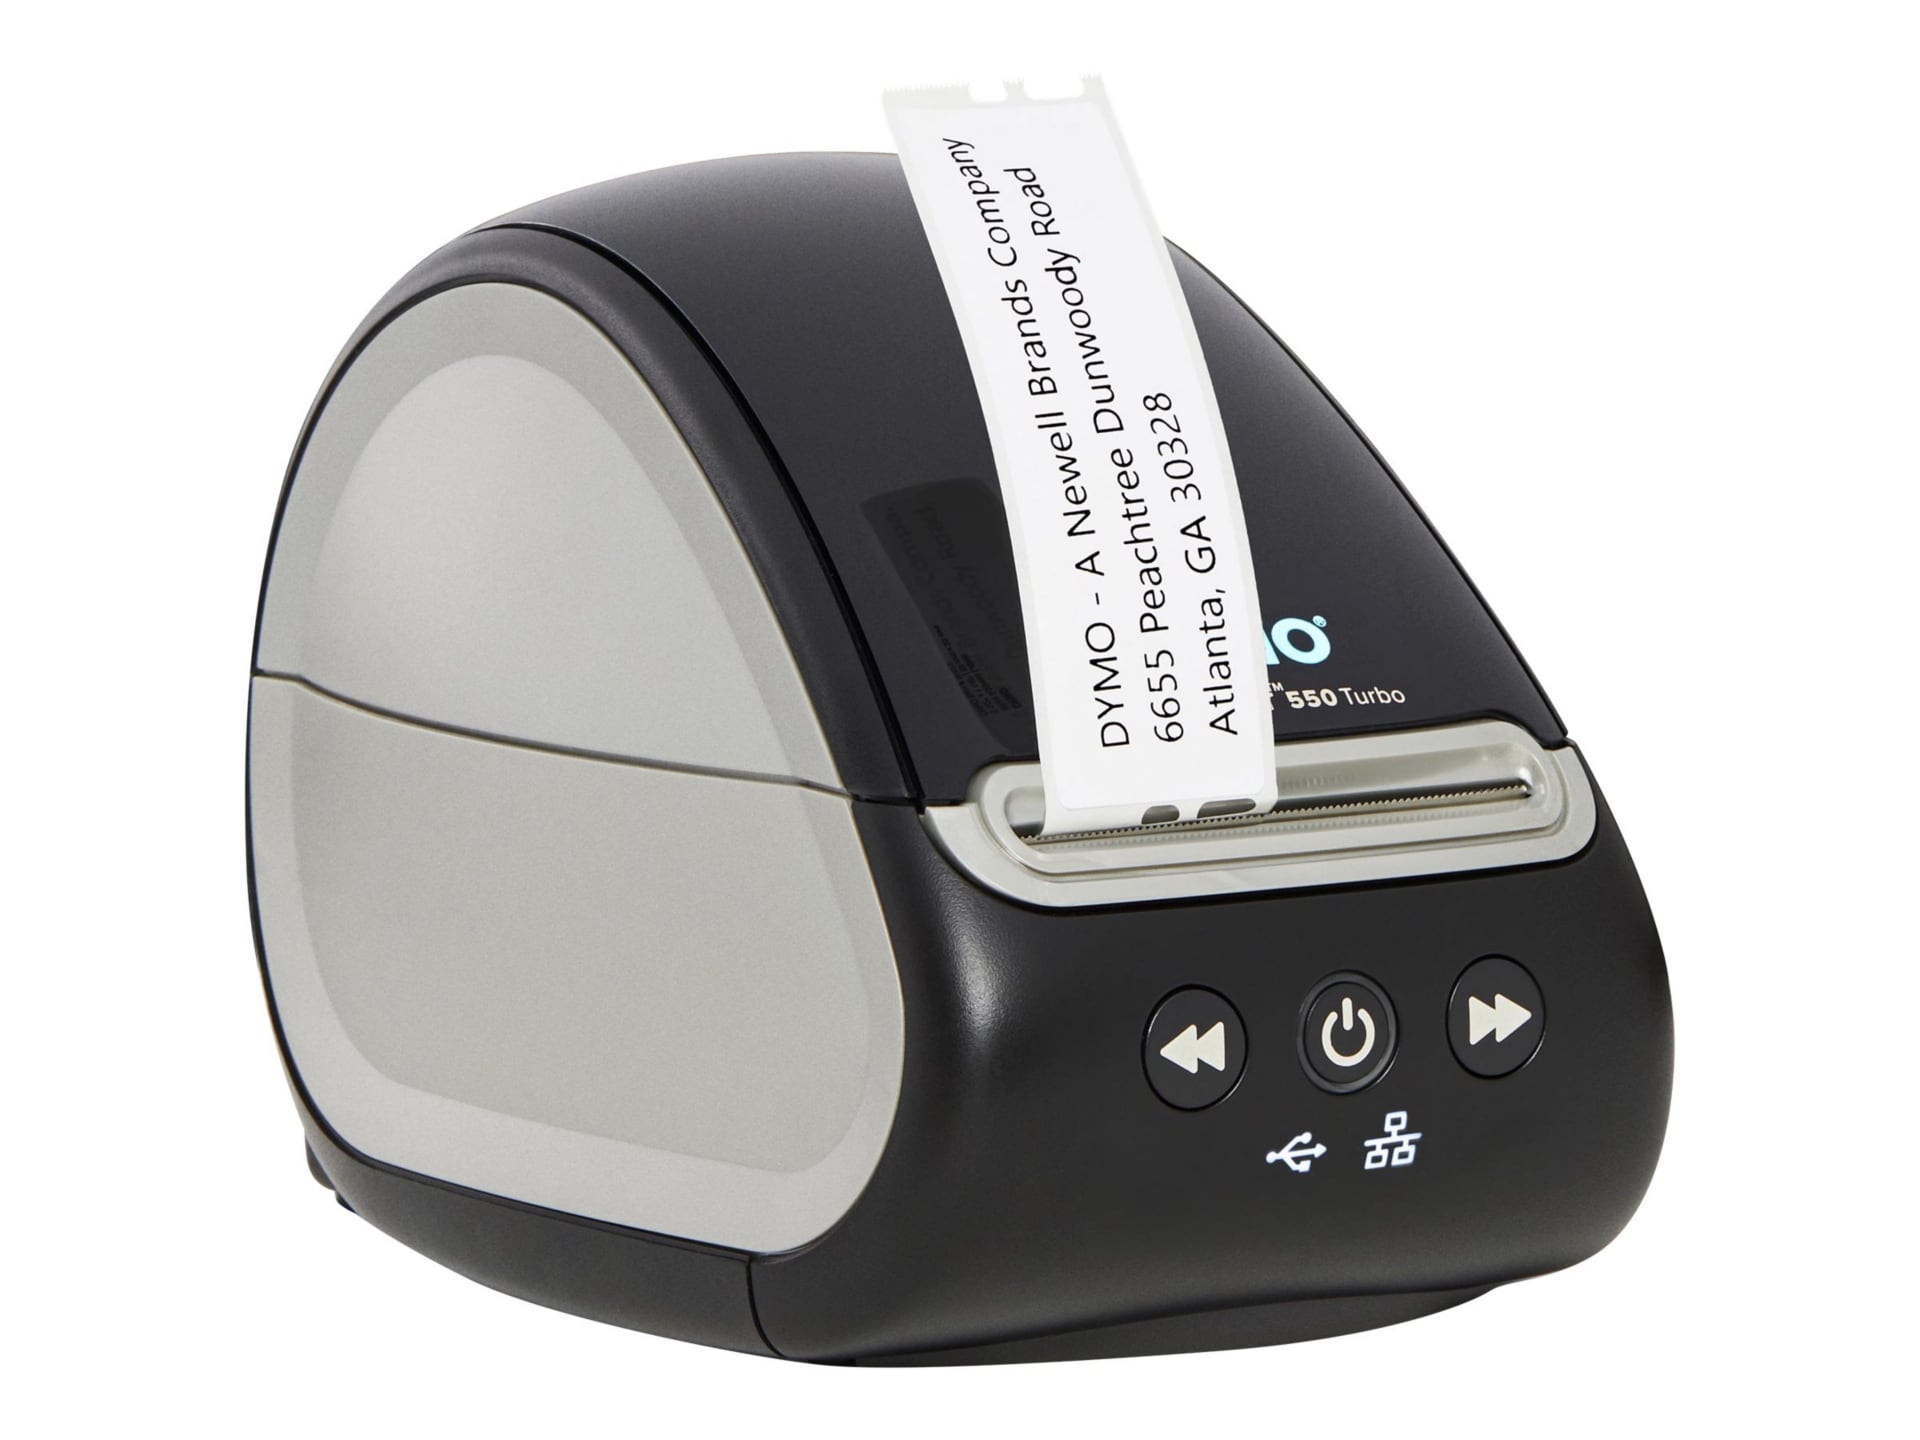 LabelWriter DYMO 550 Turbo - imprimante pour étiquettes - N/B - impression thermique directe